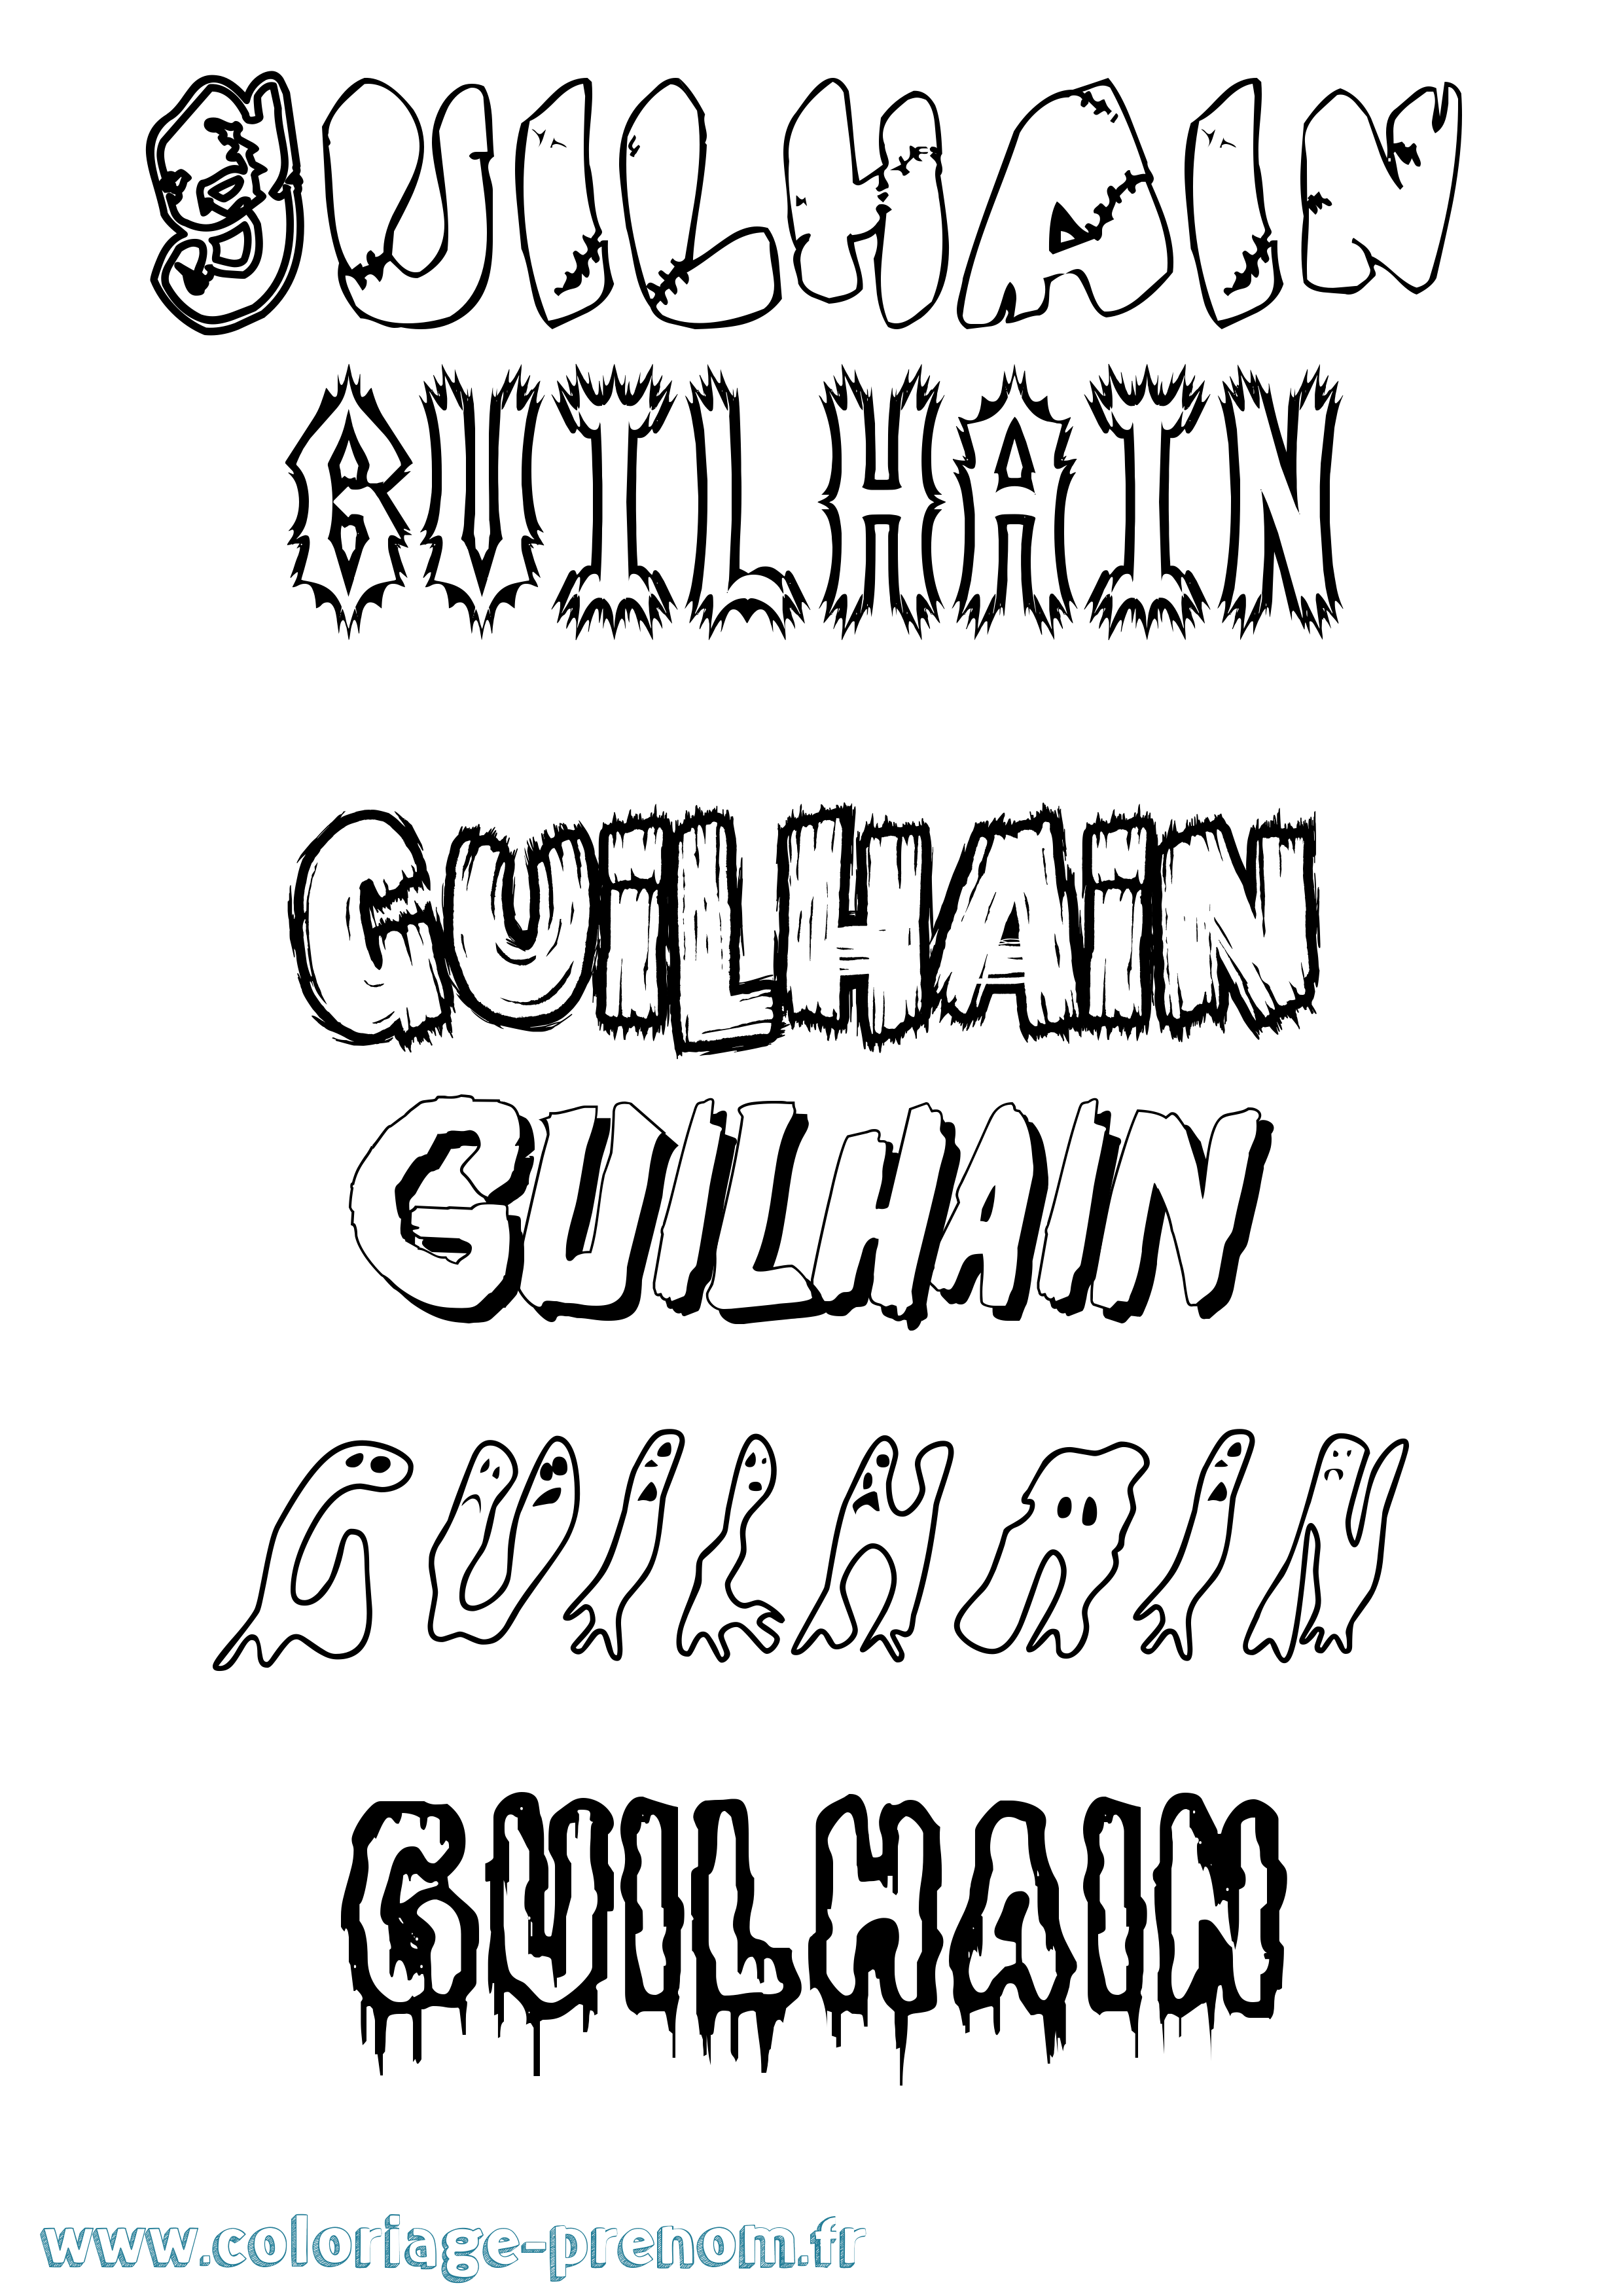 Coloriage prénom Guilhain Frisson